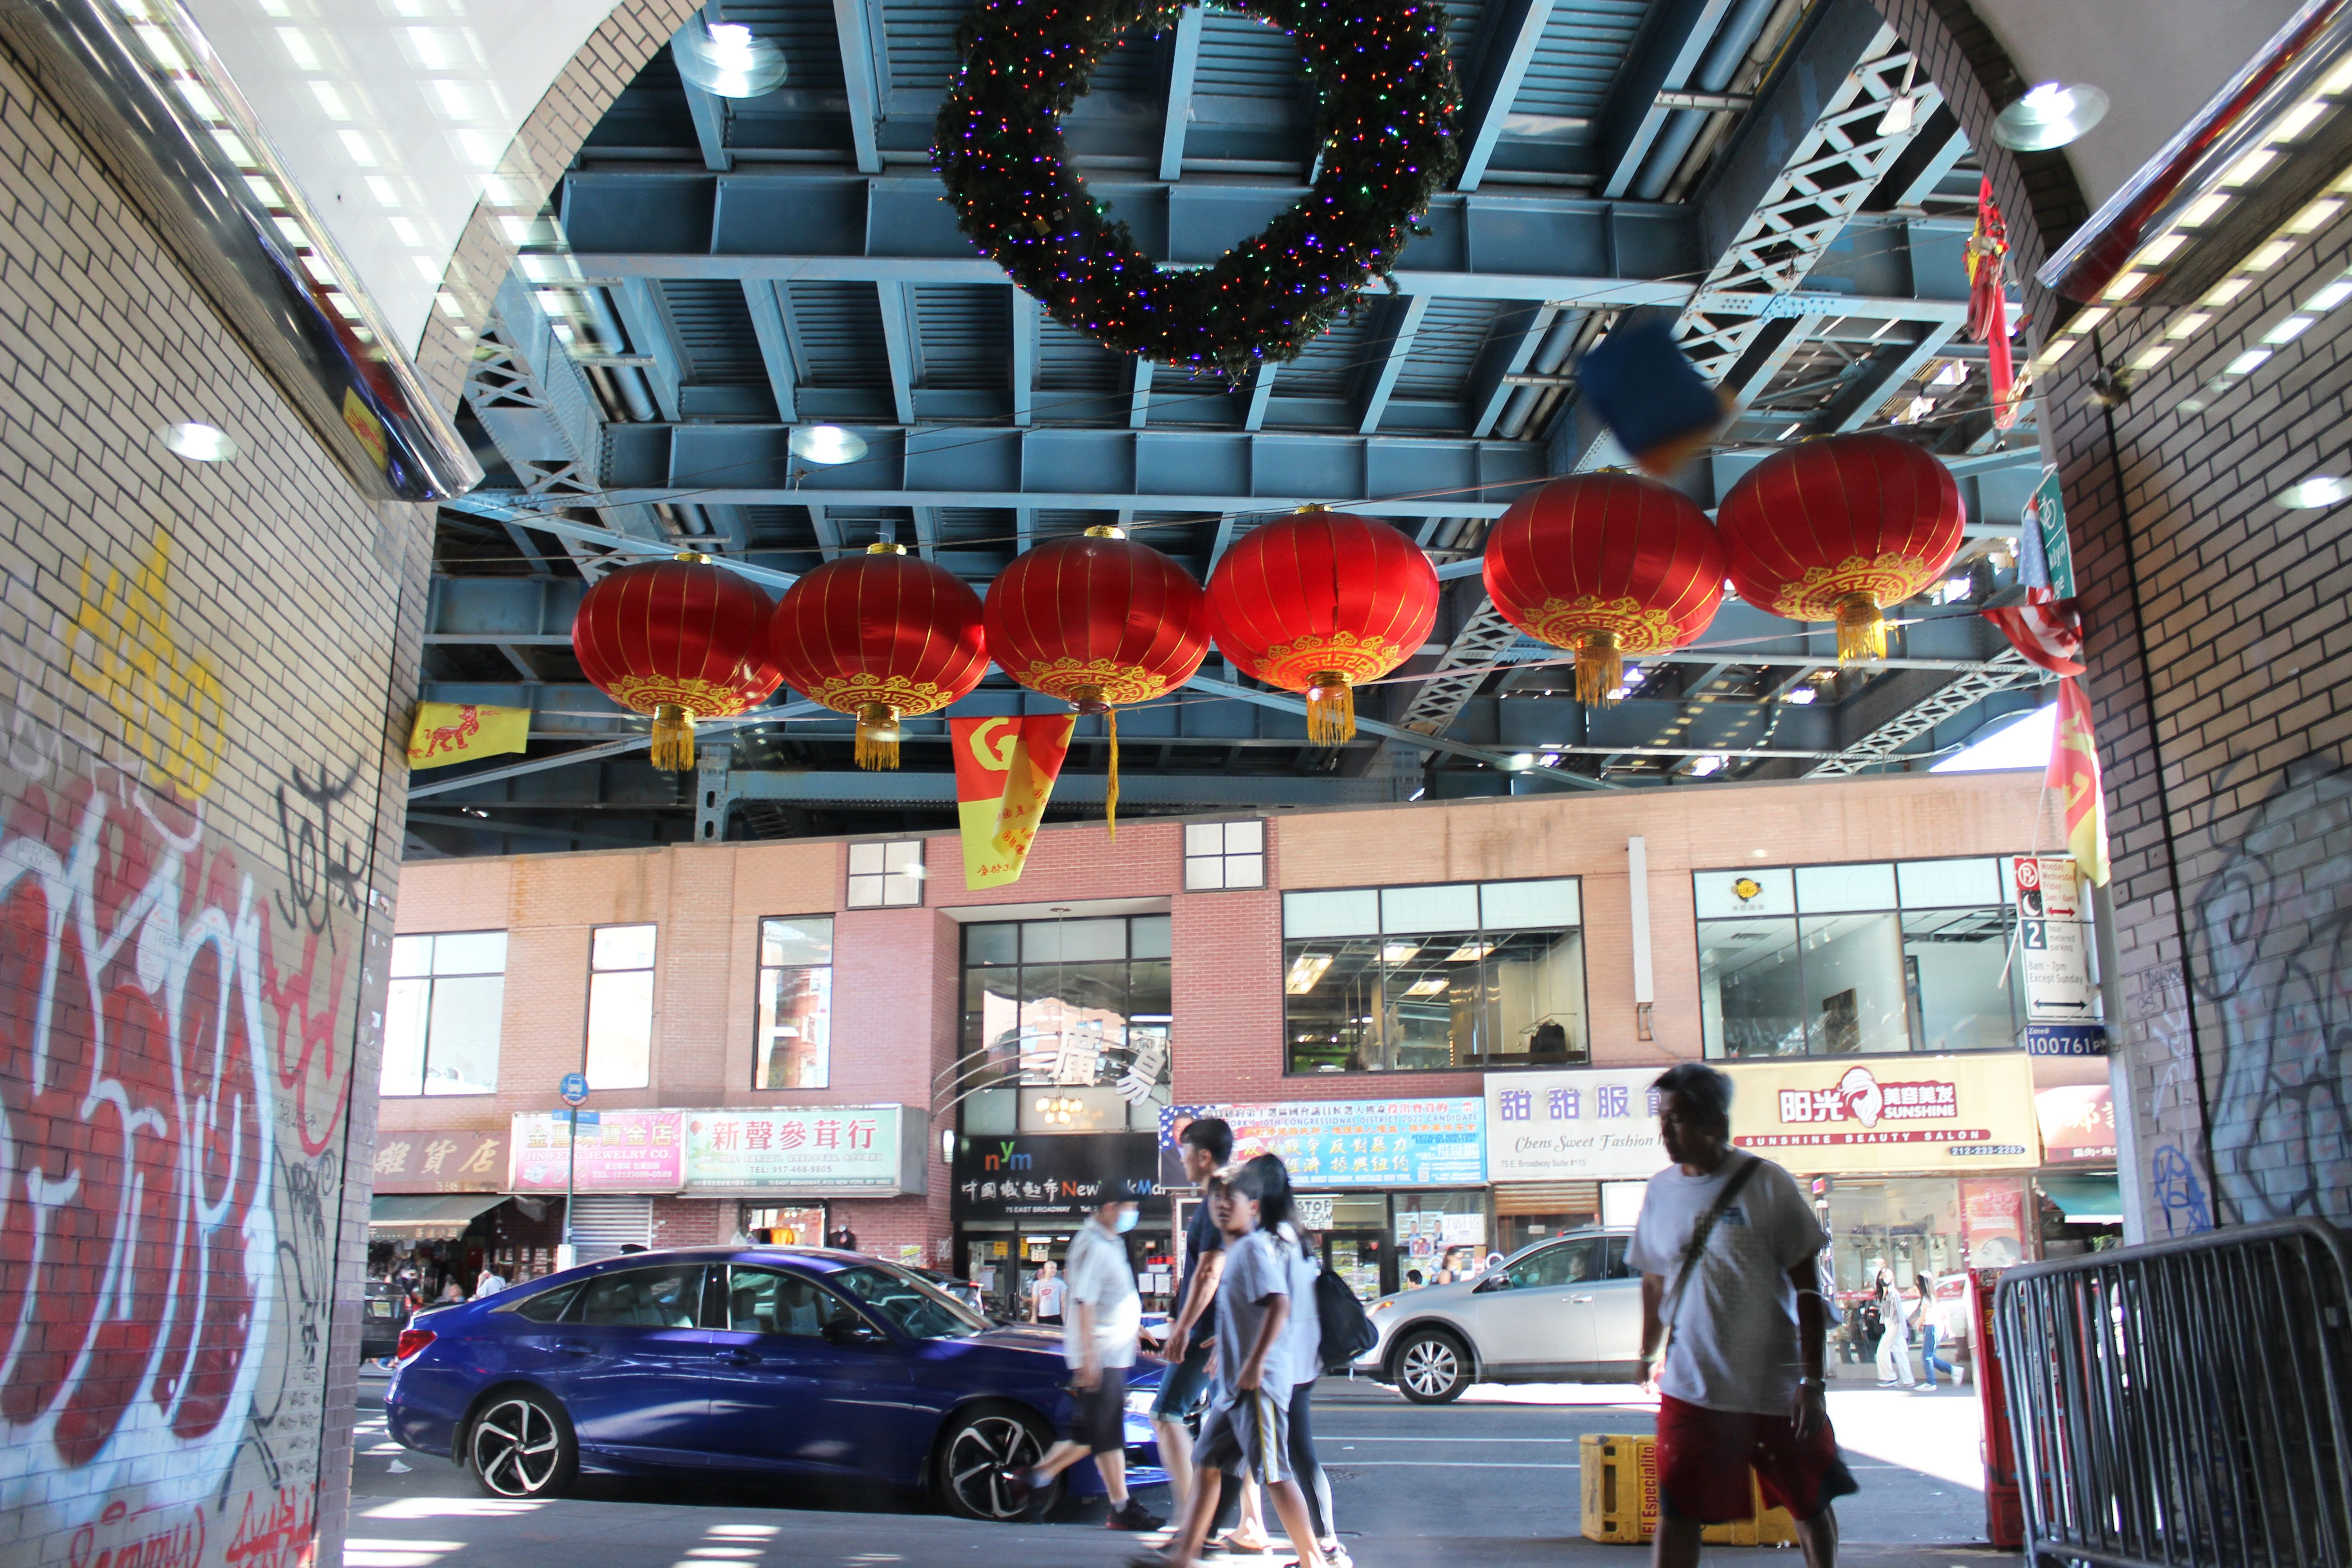 replica chinatown new york shopping